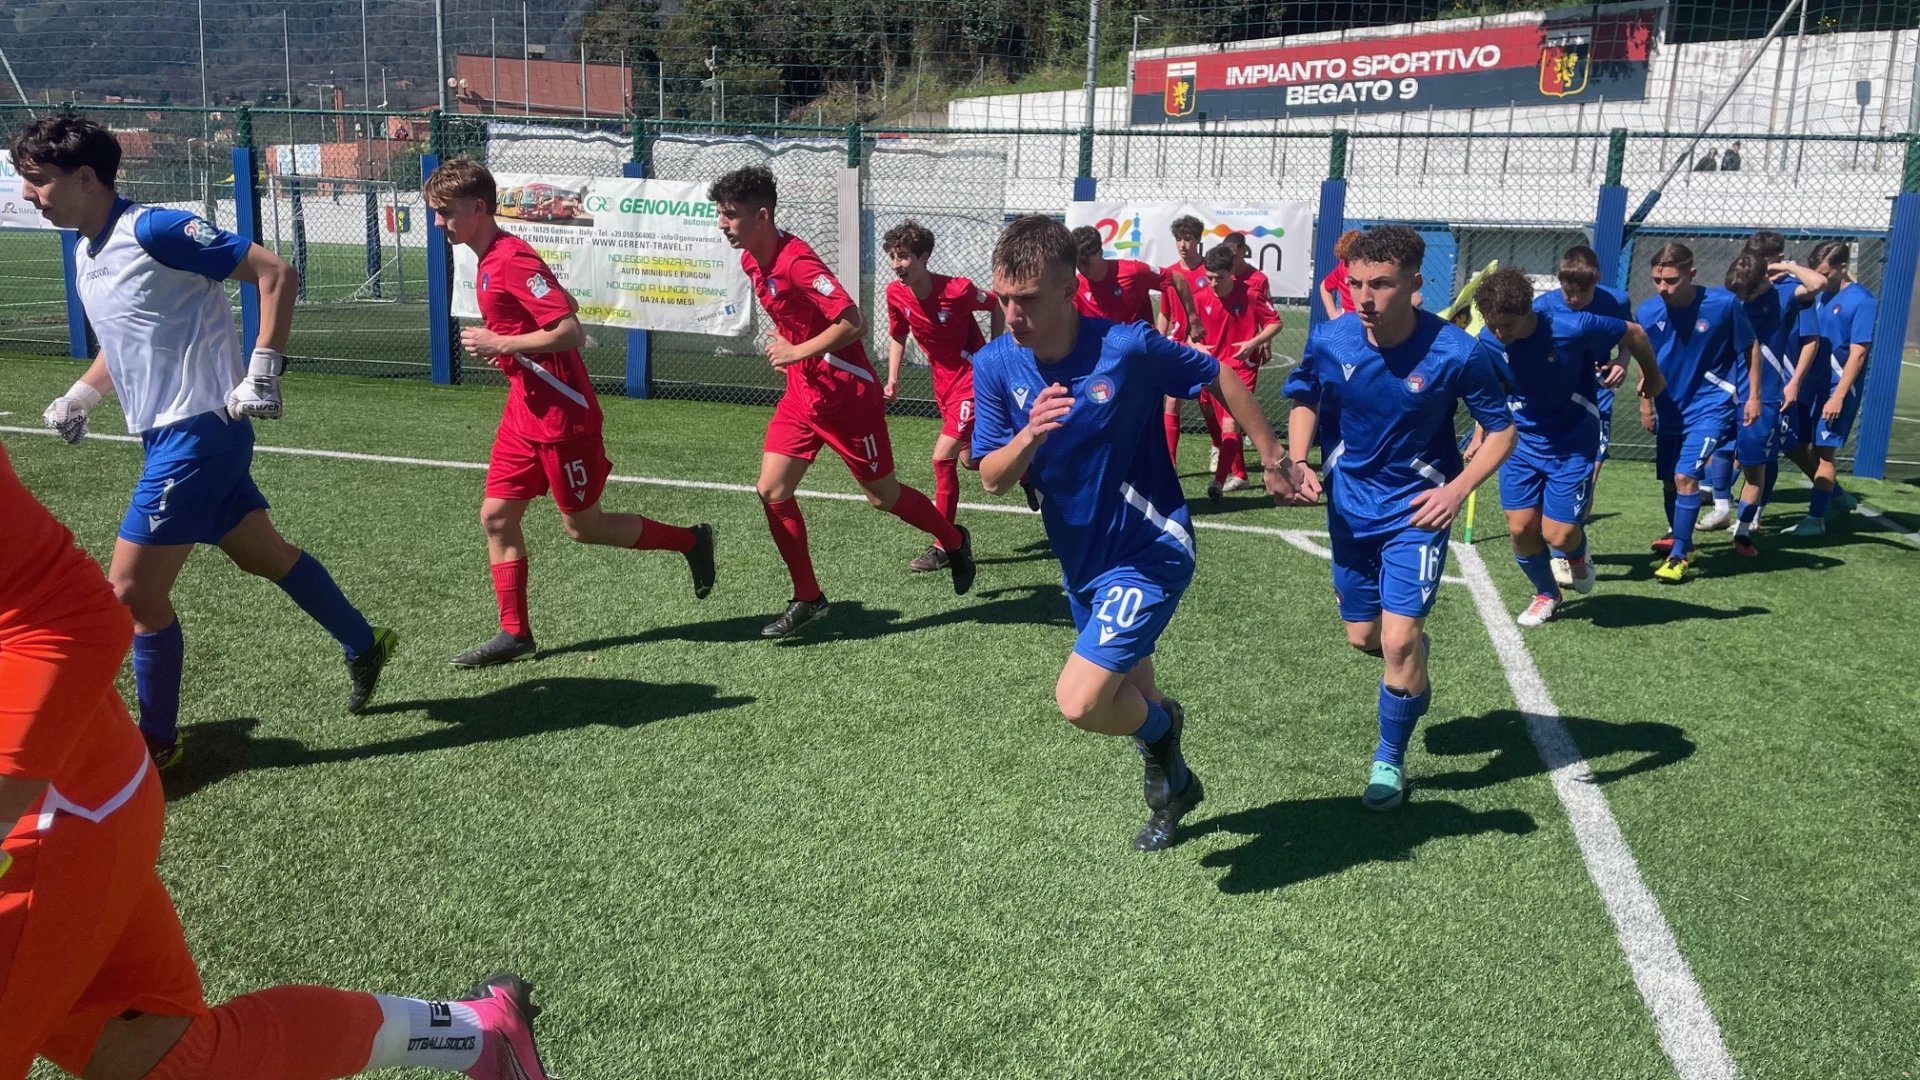 Torneo delle Regioni: arrivano due sconfitte per il Molise contro la Liguria sia per gli allievi che per i giovanissimi. Il resoconto della giornata numero 2 di gare.